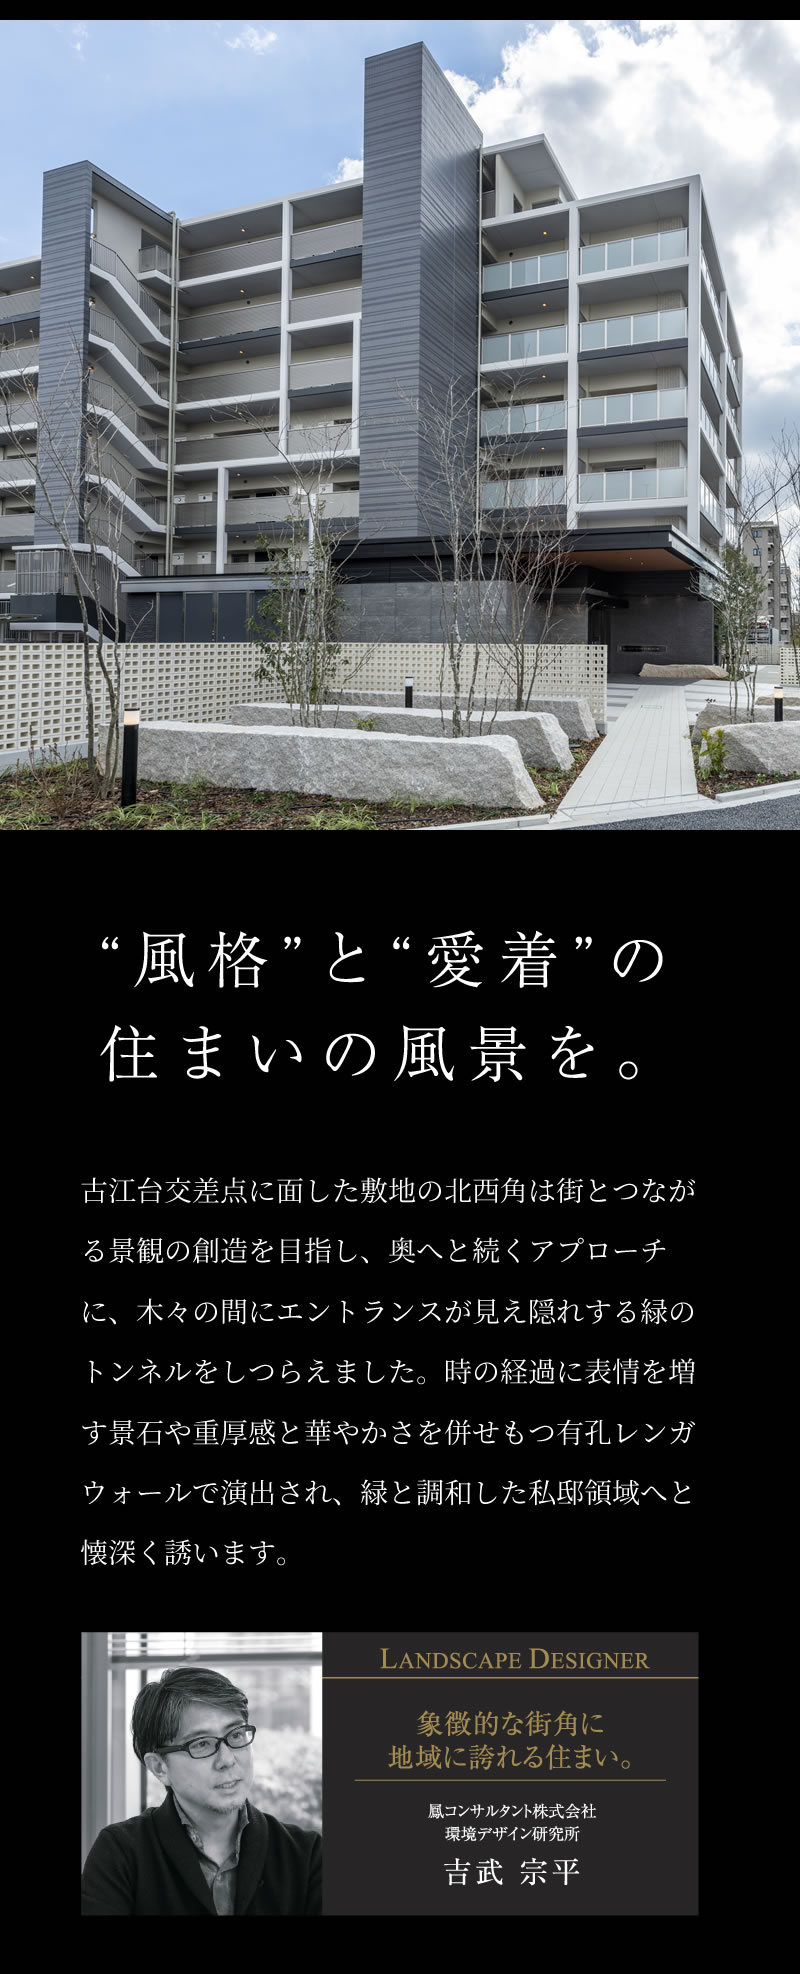 デザイン 公式 レ ジェイド千里古江台 日本エスコンの新築分譲マンション